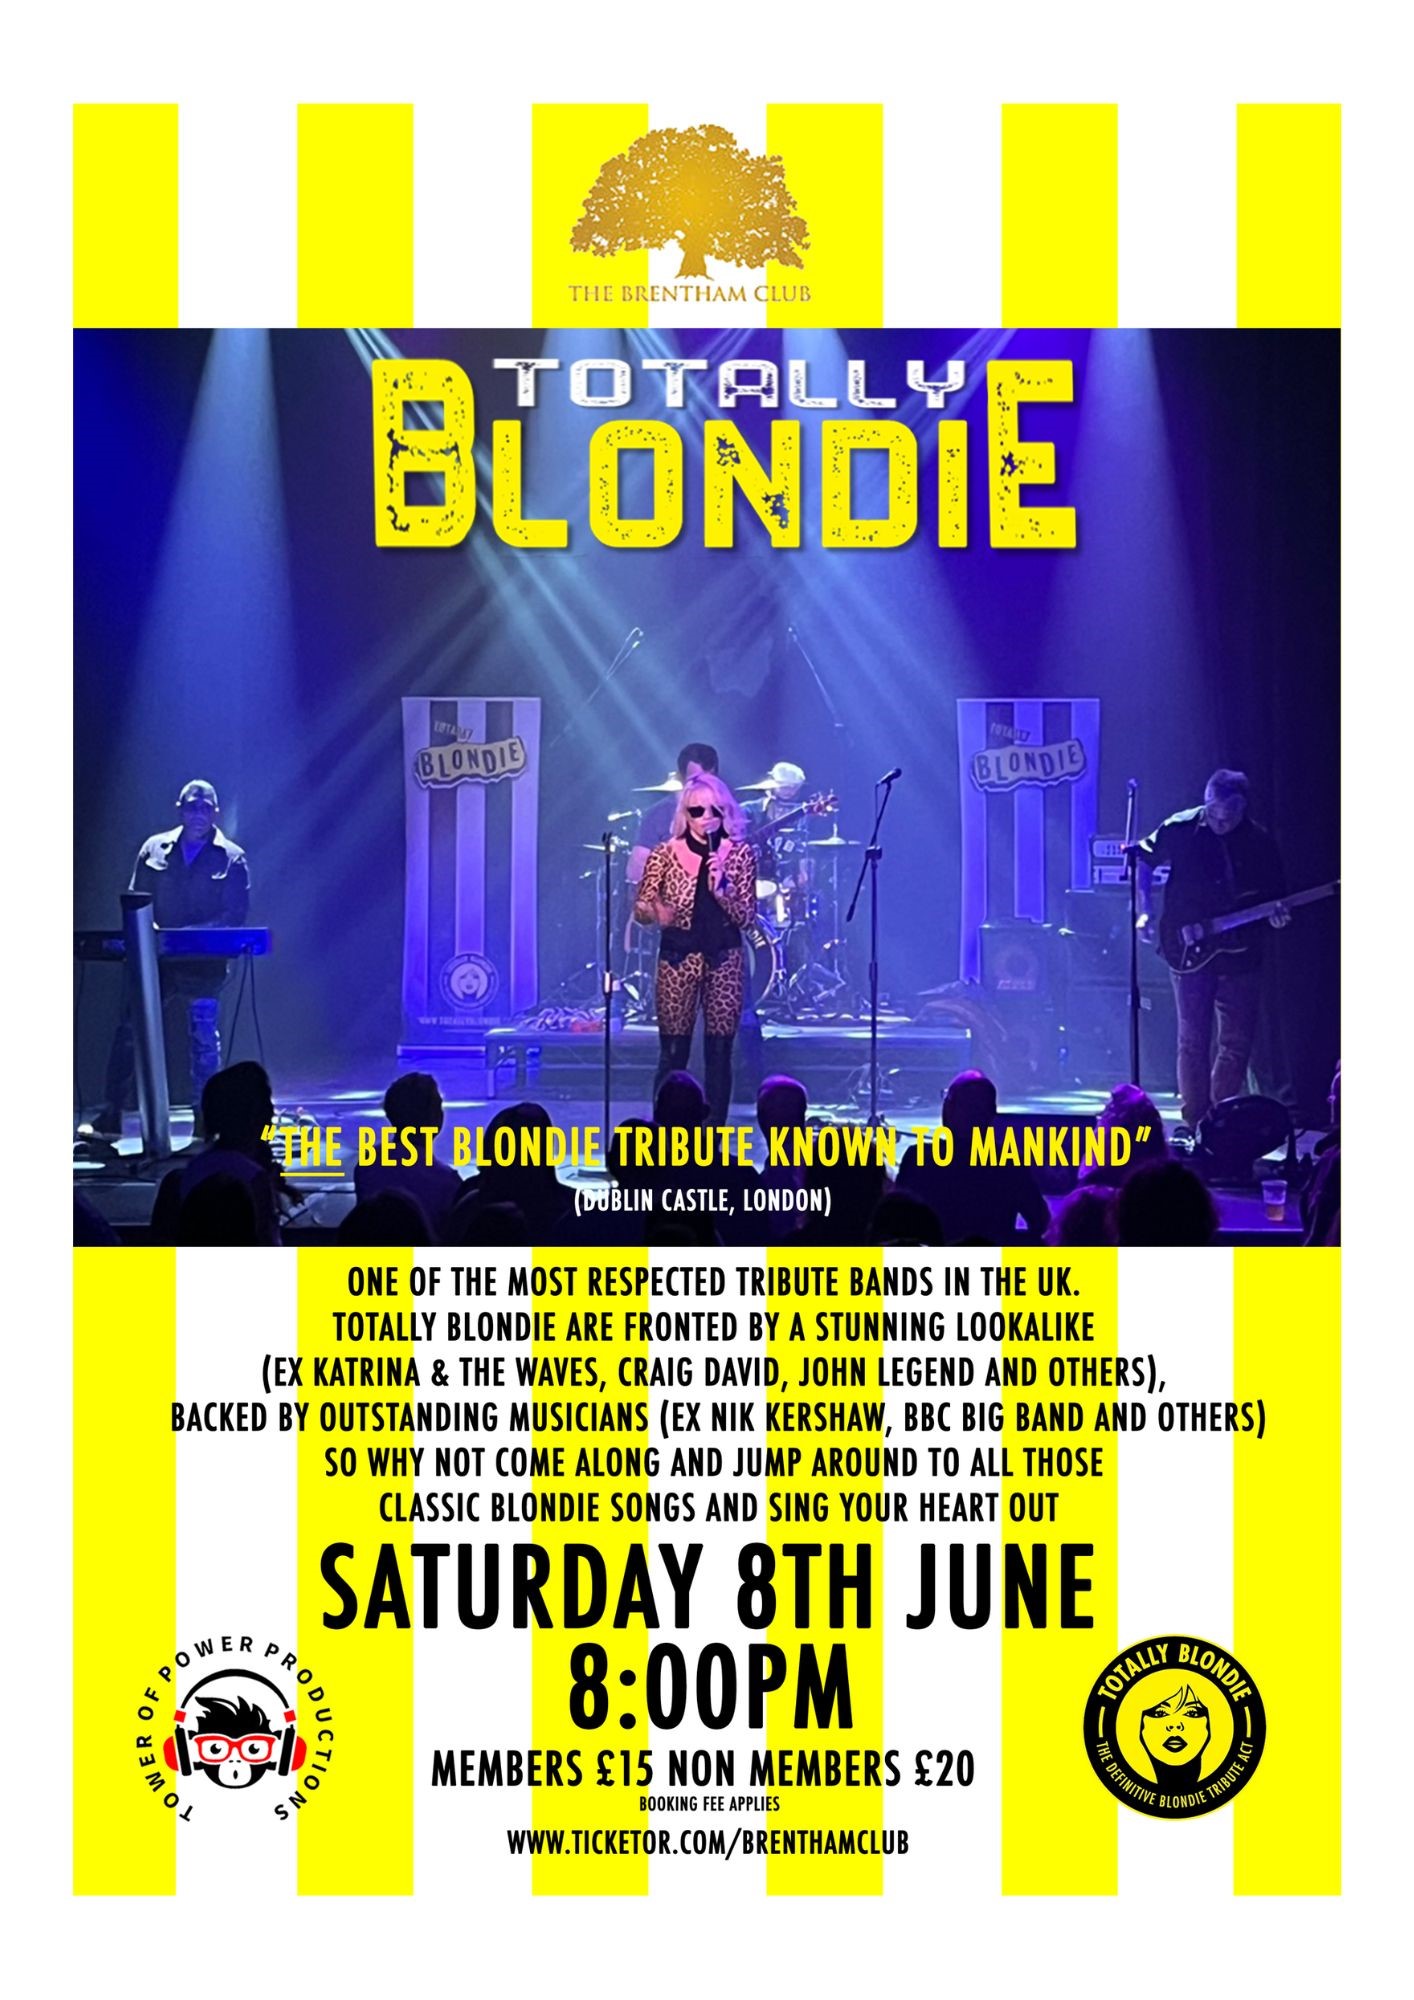 Totally Blondie Blondie Tribute on juin 08, 20:00@The Brentham Club - Achetez des billets et obtenez des informations surBrenthamclub.co.uk 